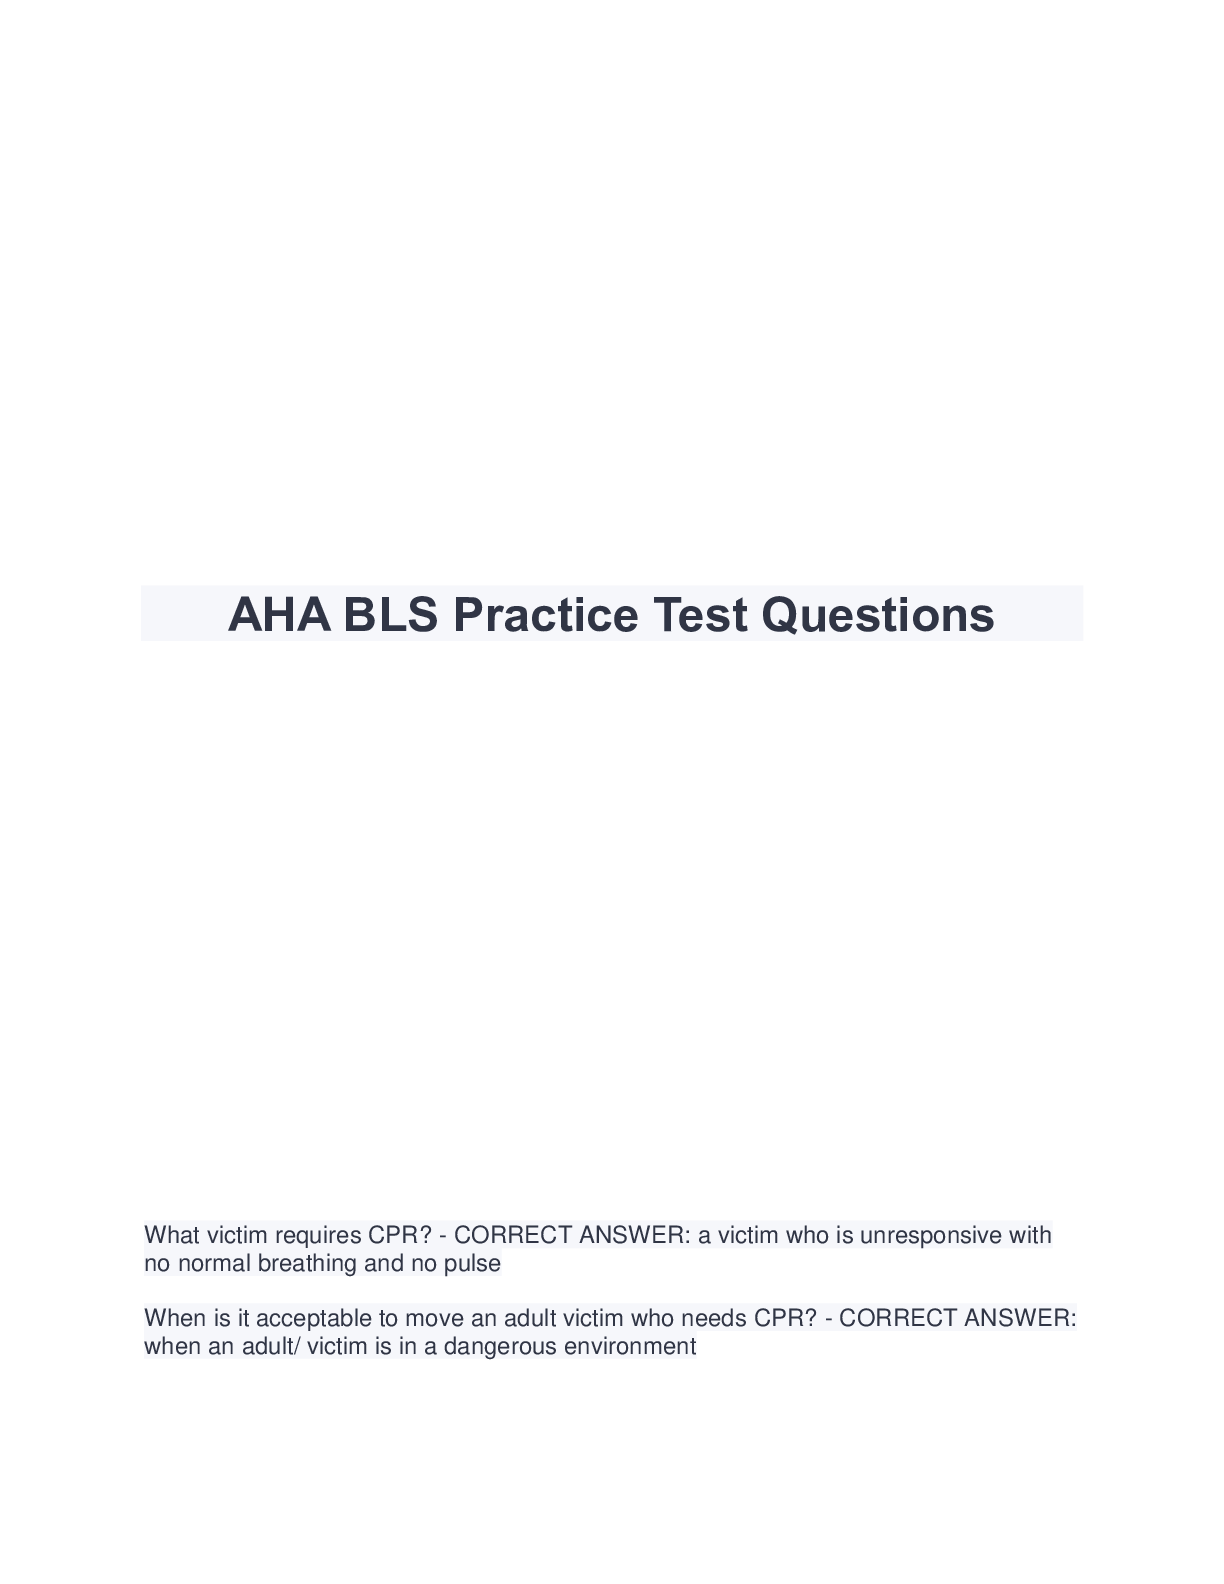 aha-bls-practice-test-questions-browsegrades